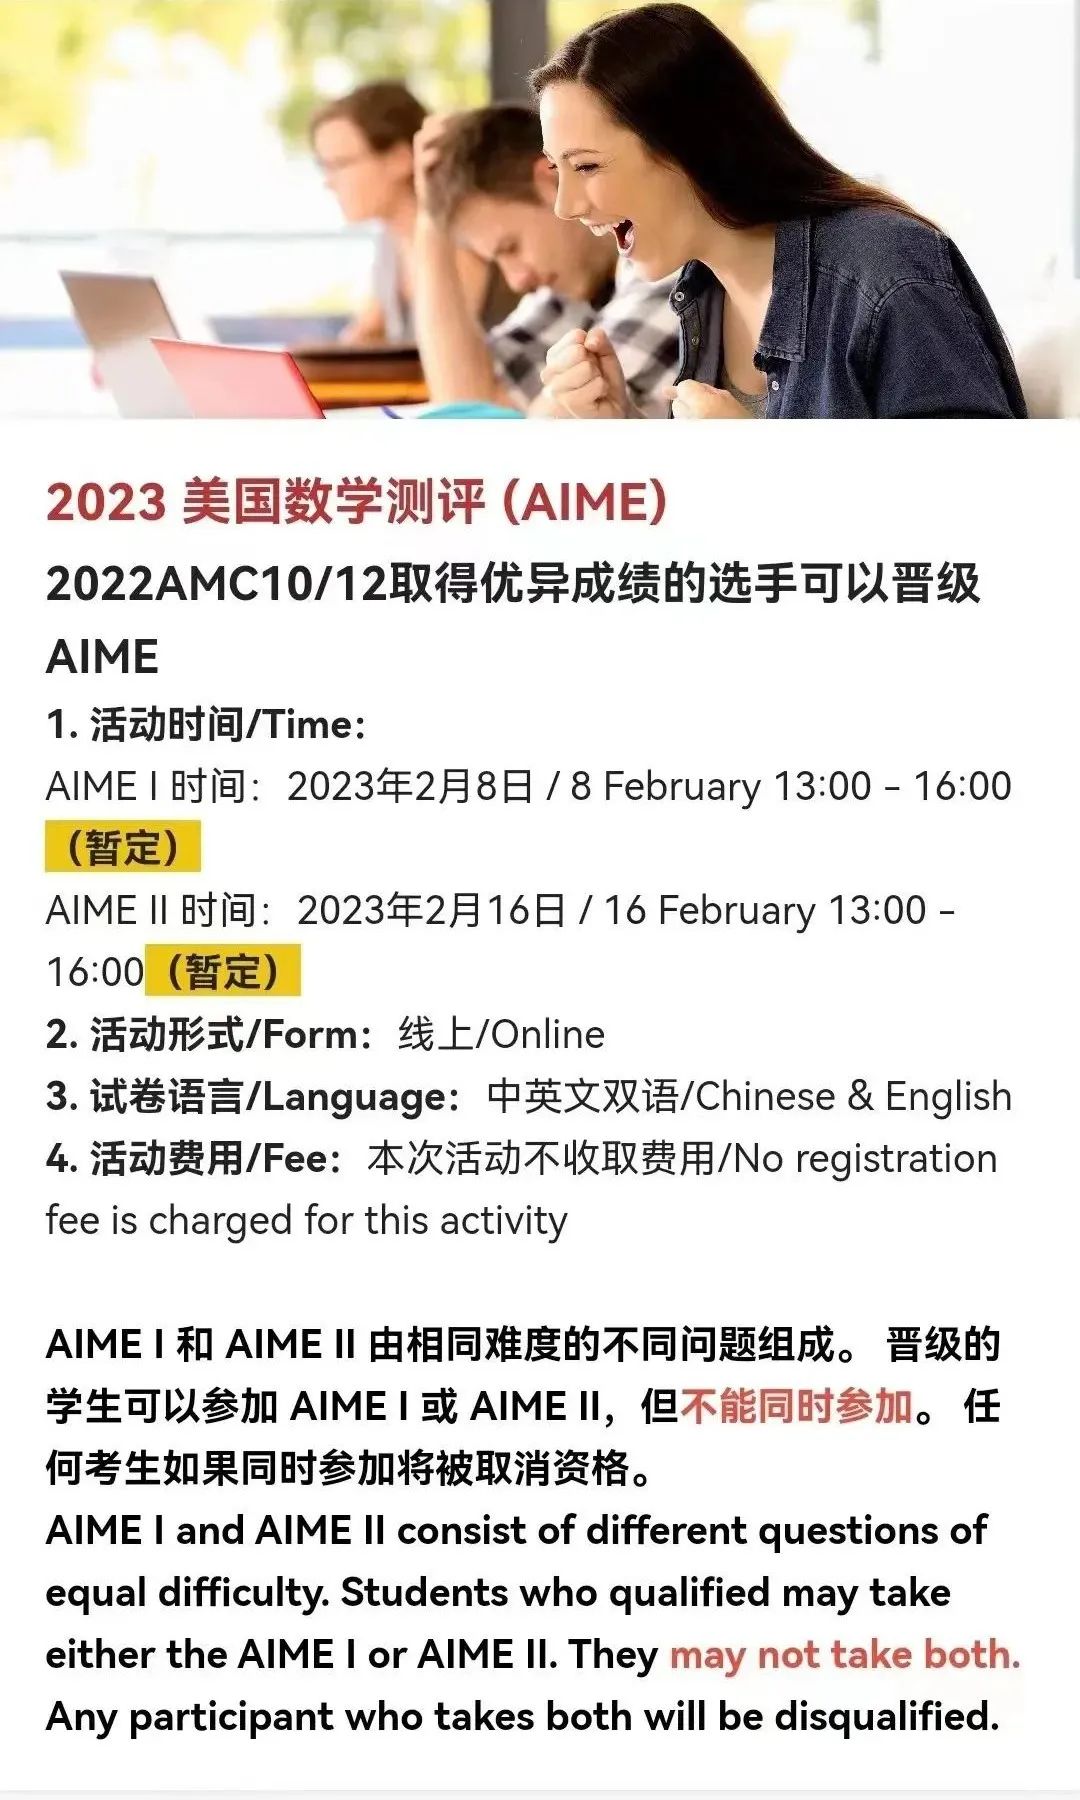 AMC10/12证书开放下载，AIME报名倒计时2天！附报考/冲奖指南